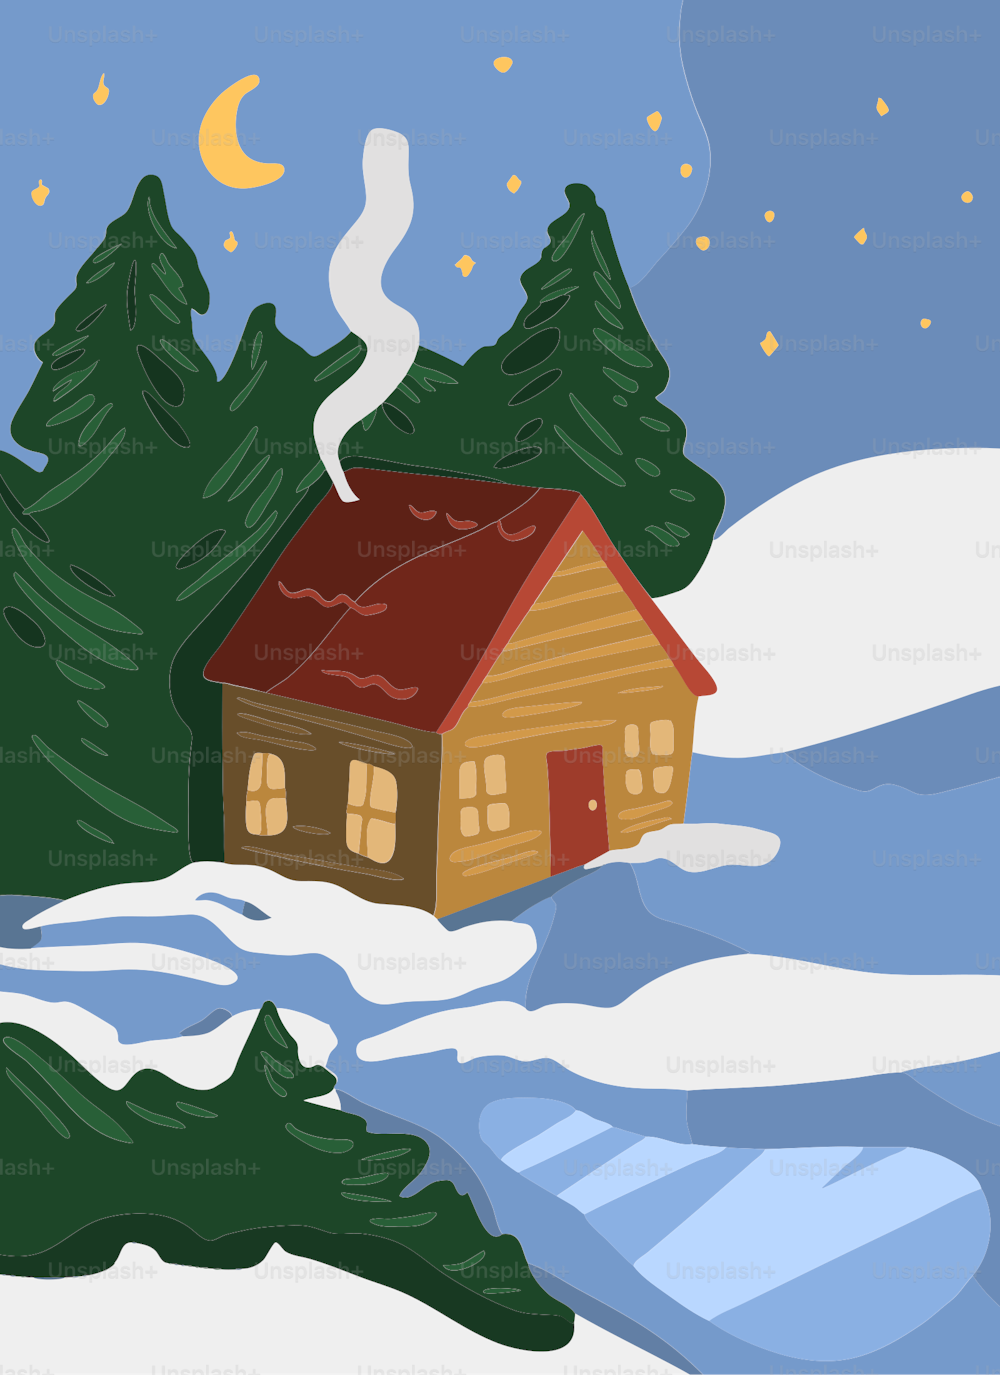 Una casa en un paisaje nevado con árboles